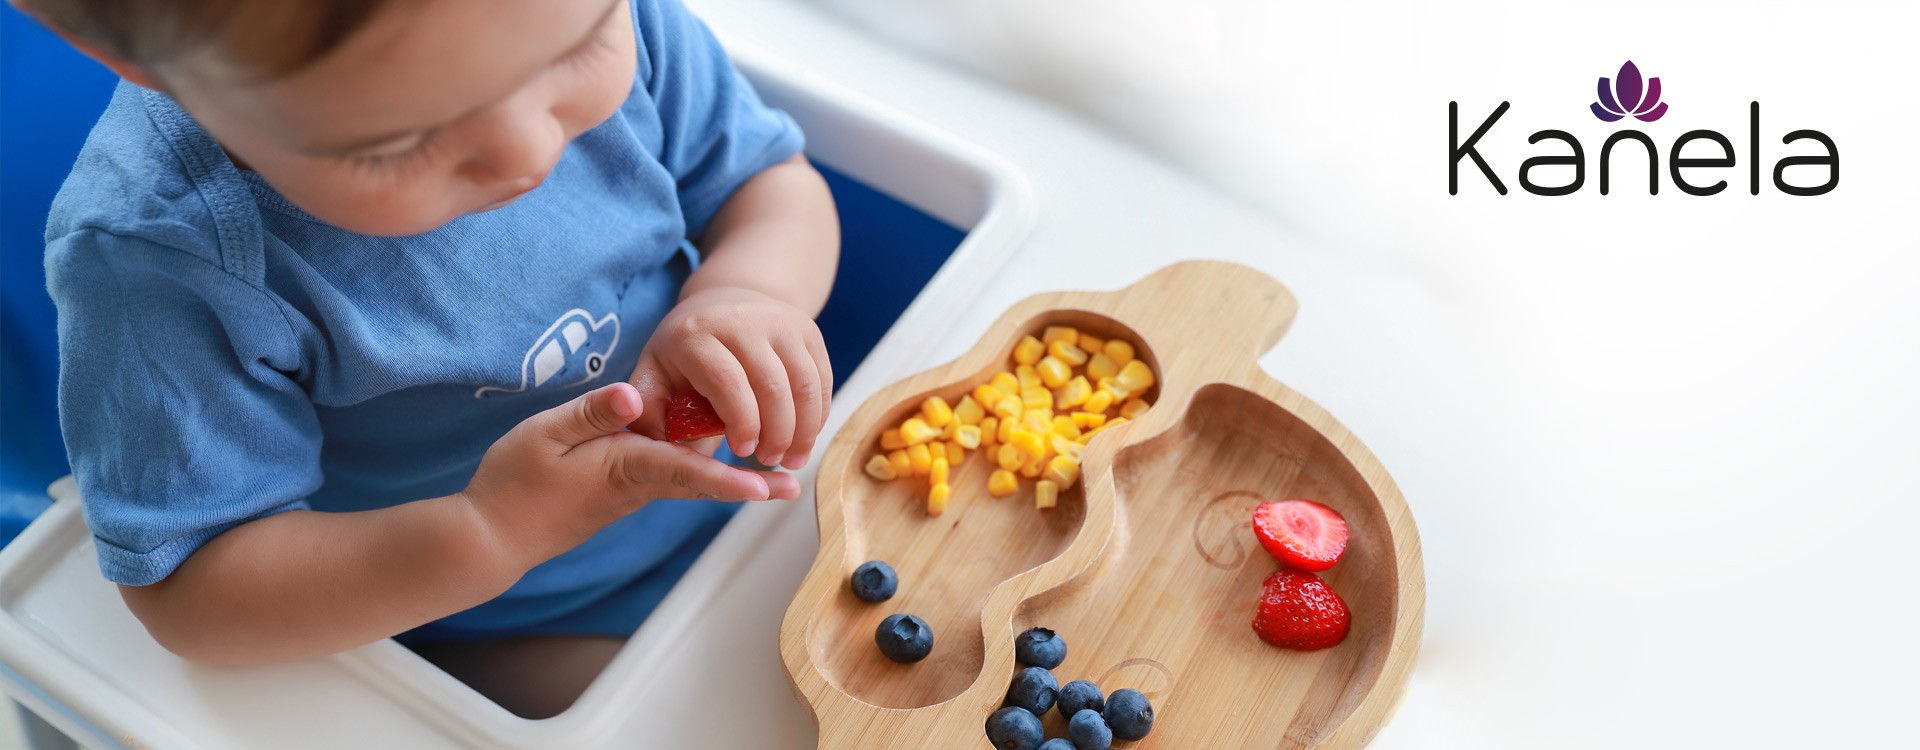 Ernährung: Die richtigen Snacks für Kleinkinder